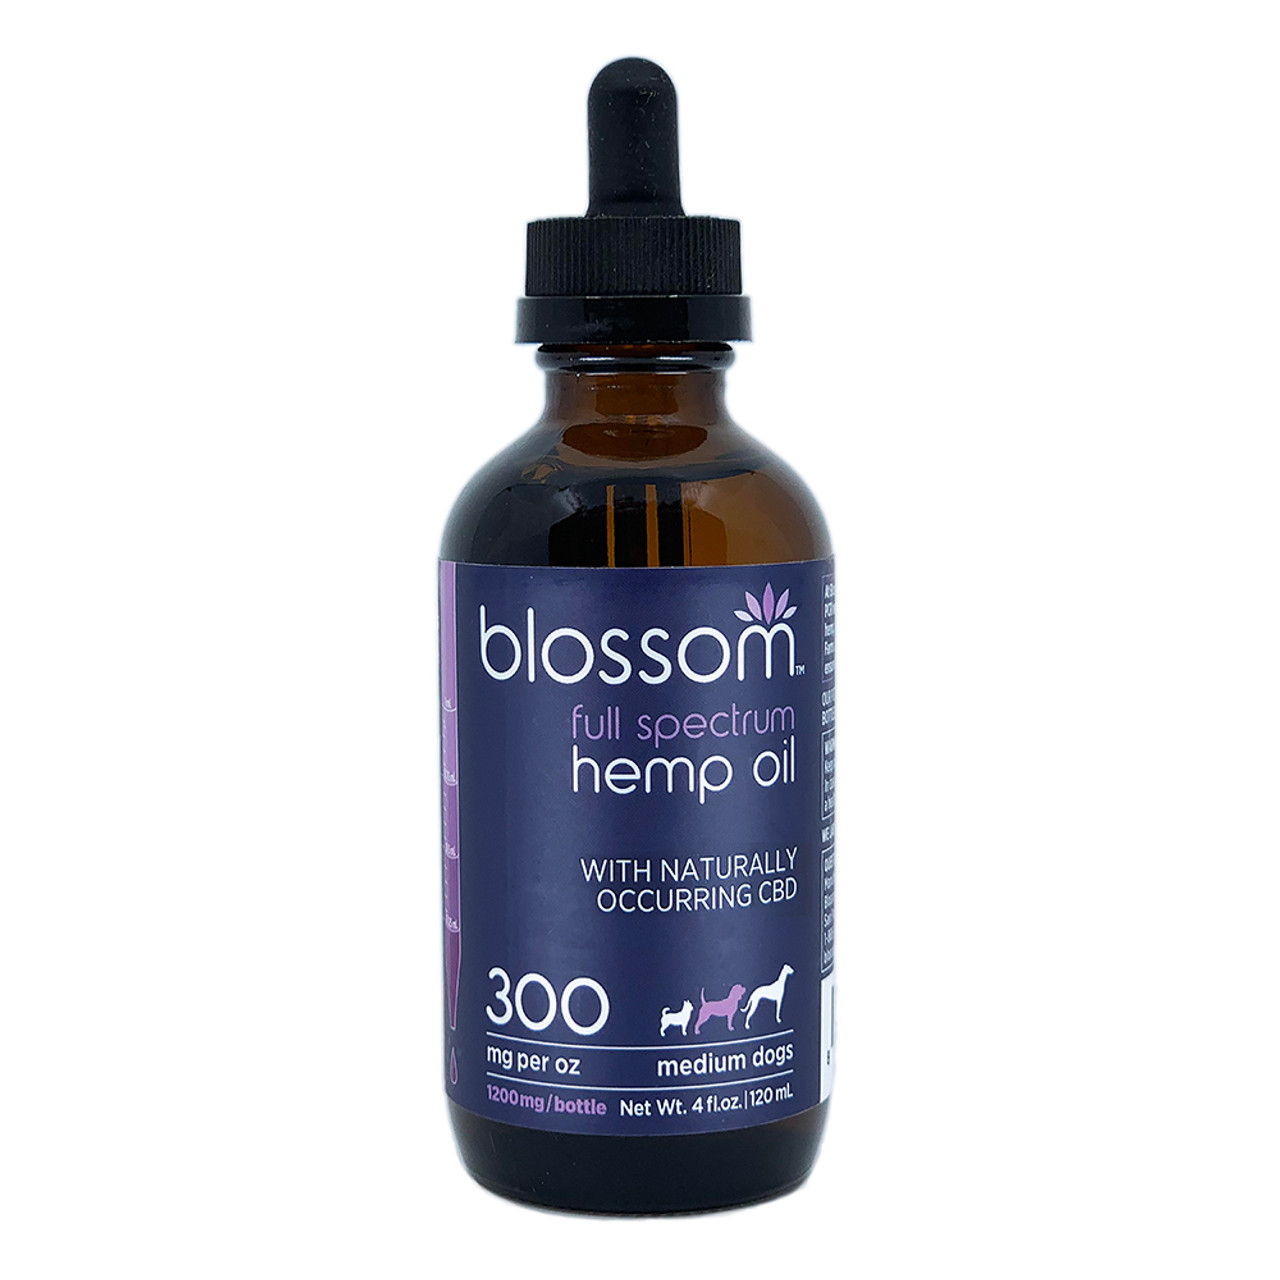 Blossom Full Spectrum Hemp Oil 1200 mg for Medium Dogs, 4 fl oz